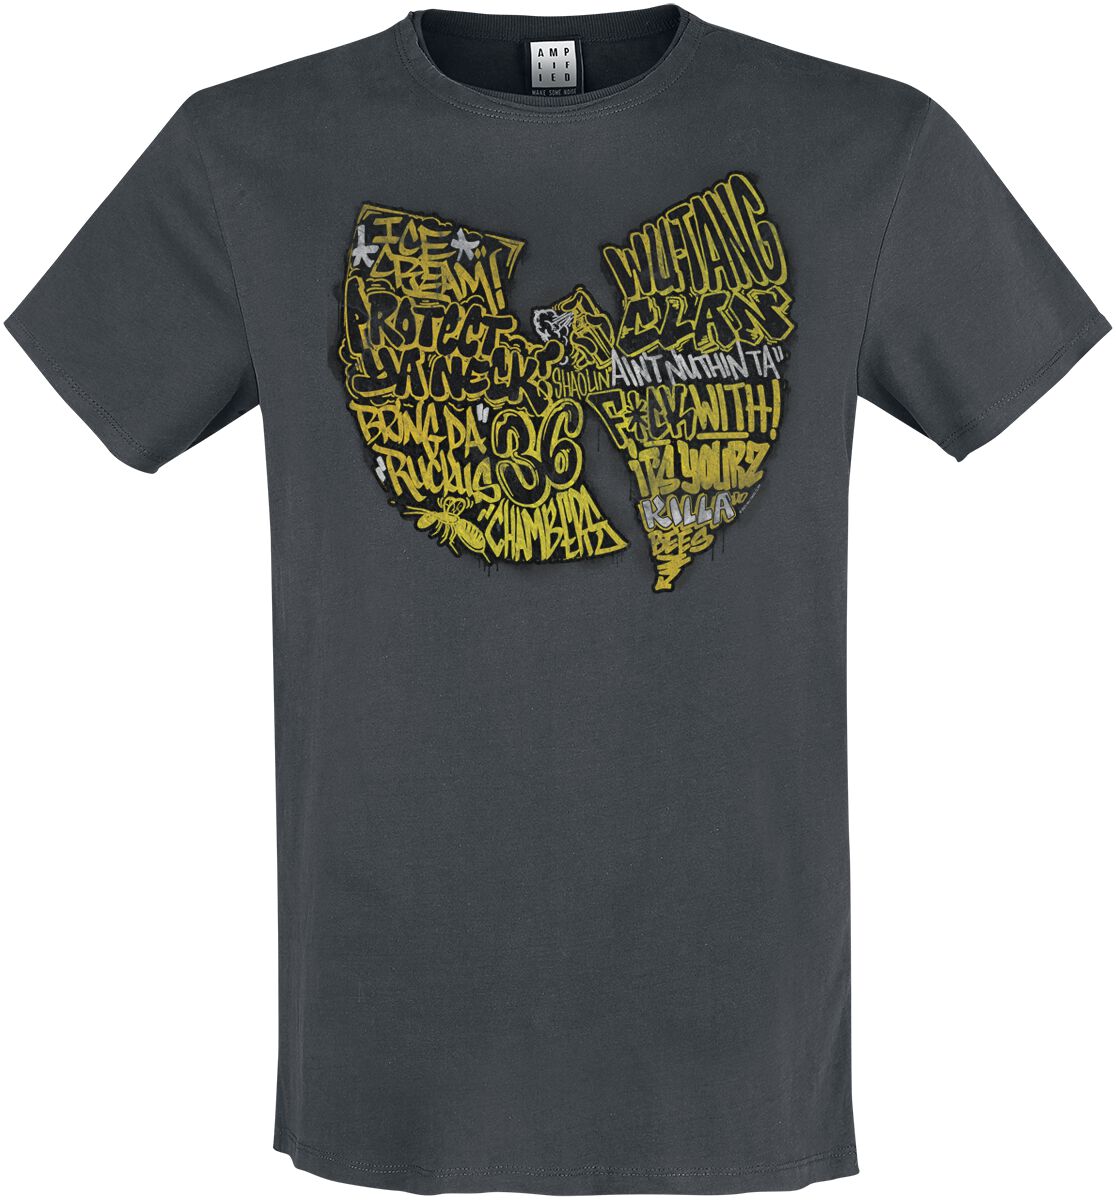 Wu-Tang Clan T-Shirt - Amplified Collection - Graffiti Logo - S bis 3XL - für Männer - Größe M - charcoal  - Lizenziertes Merchandise!